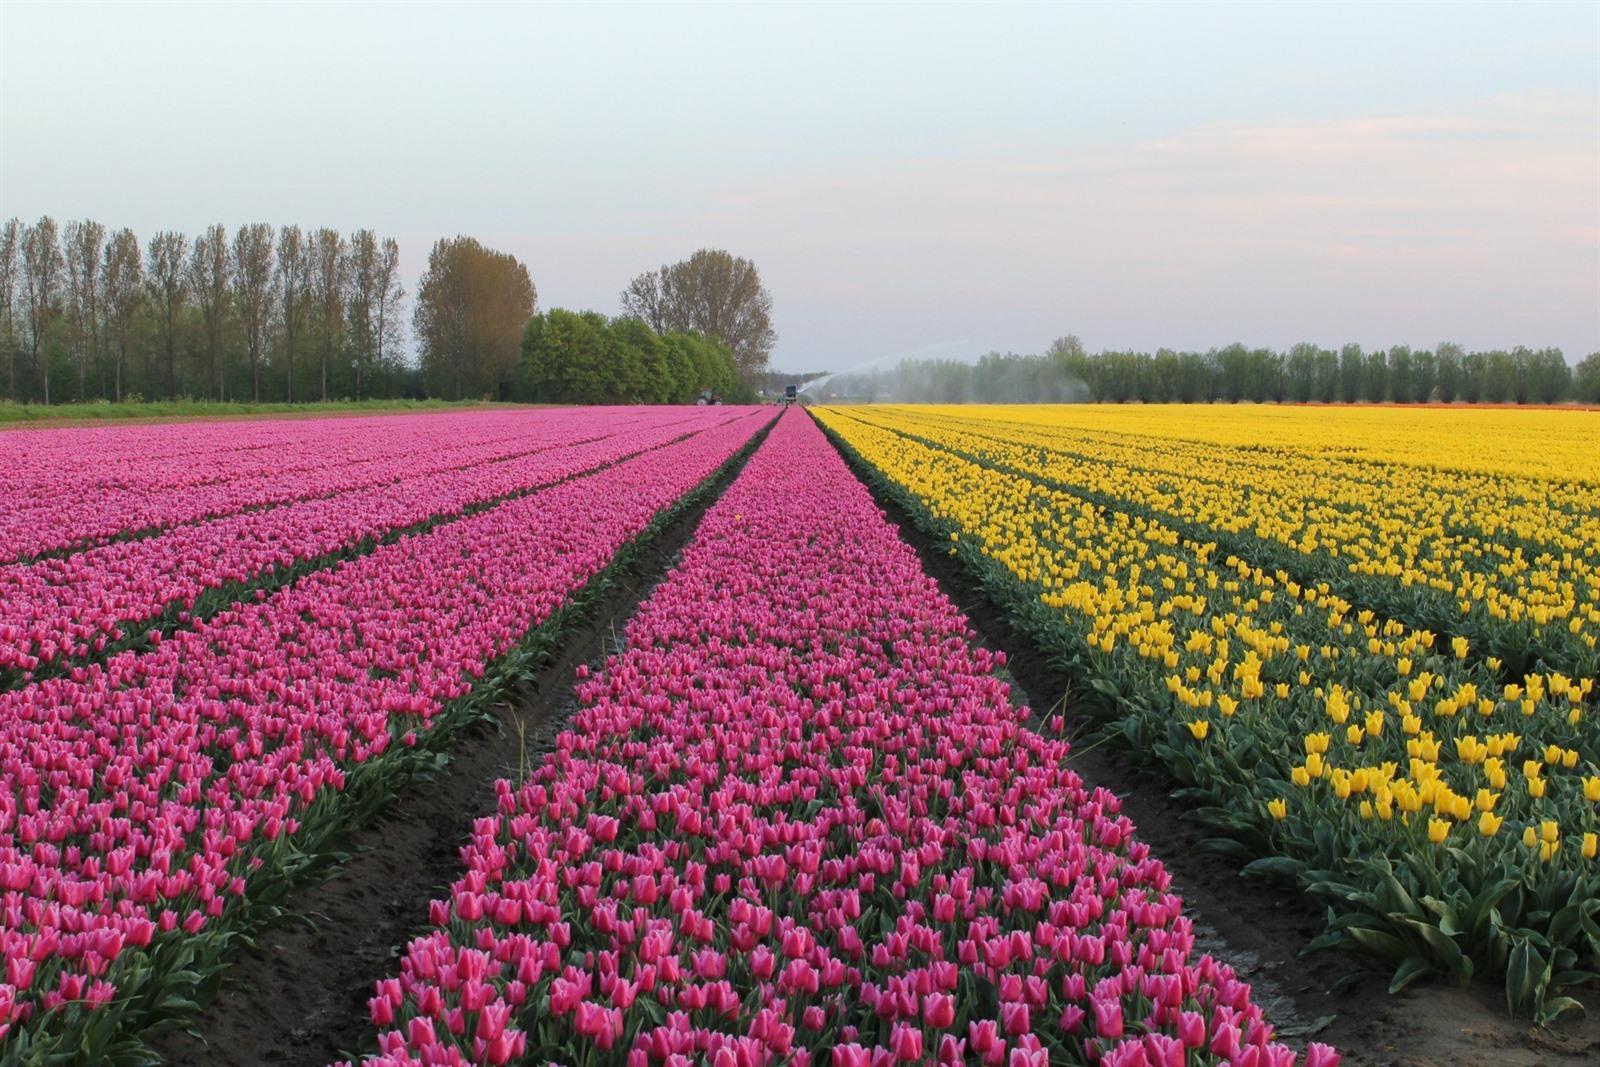 Bollenvelden In Bloei 2021 Waar Vind Je De Mooiste Tulpenvelden 2021 In Nederland Onze Top 15